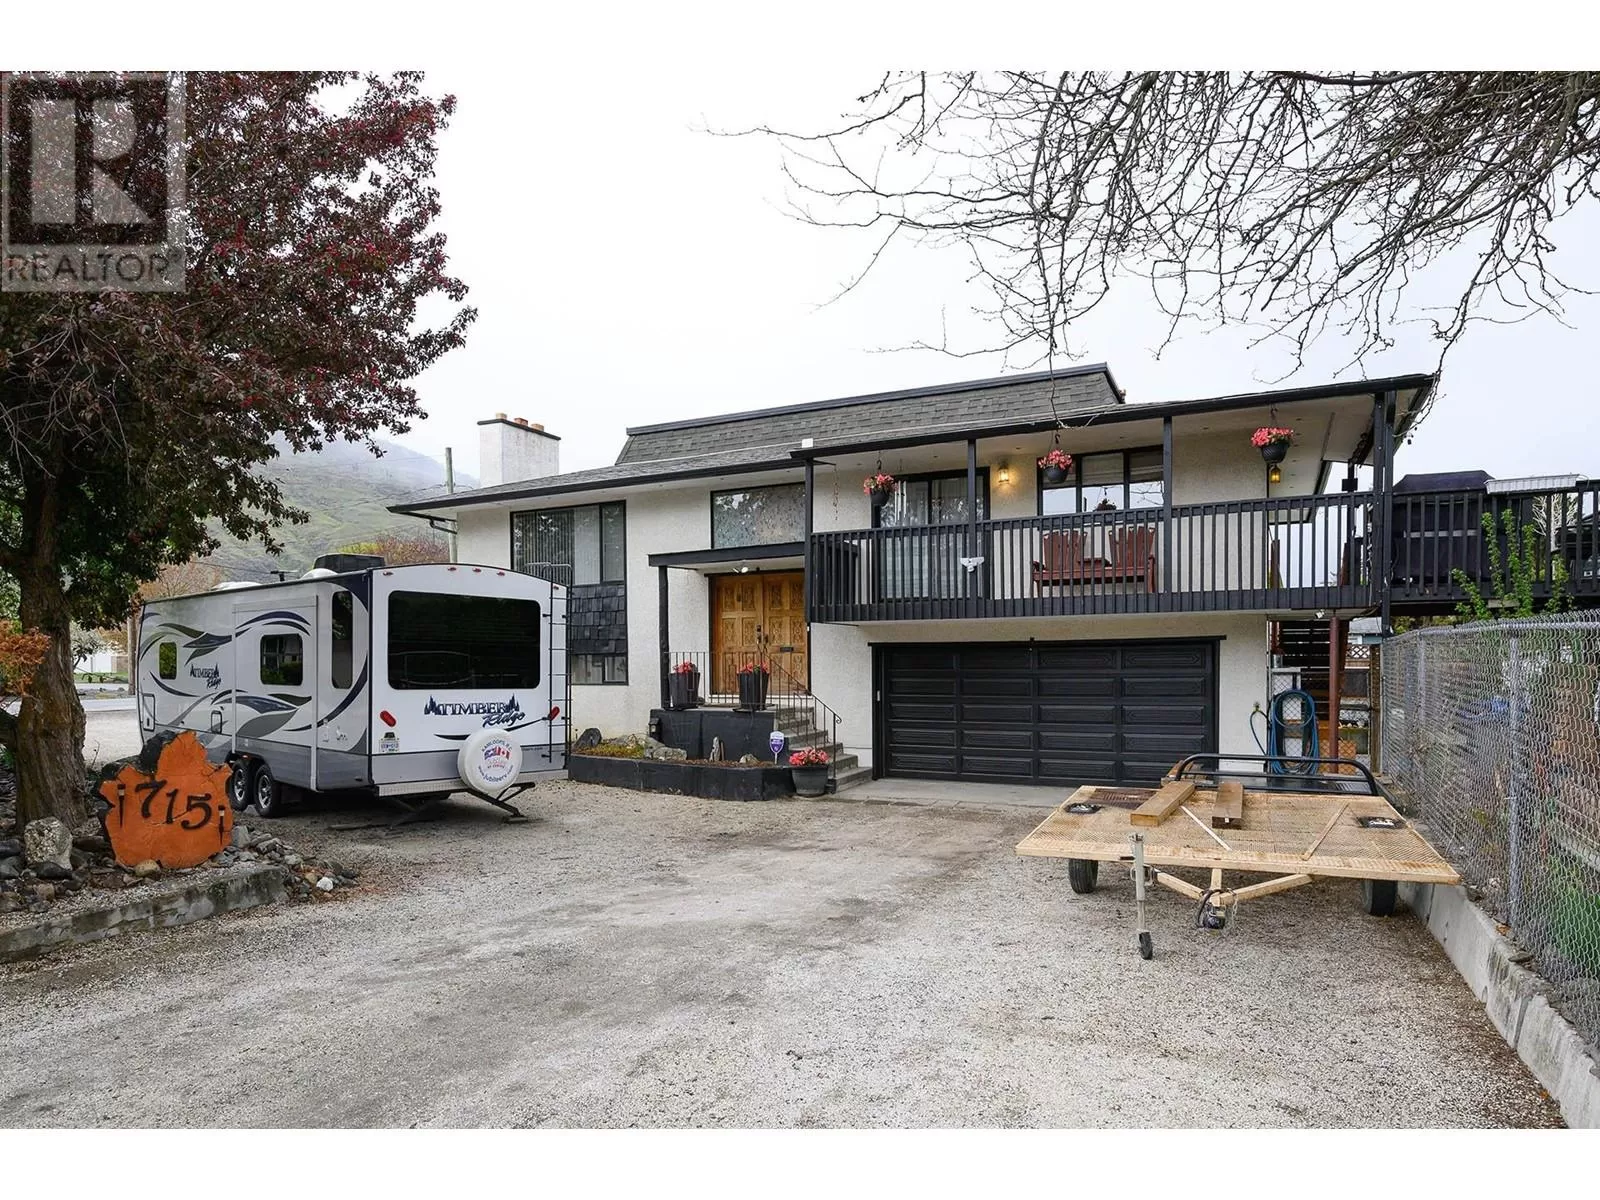 House for rent: 715 Bissette Road, Kamloops, British Columbia V2B 6L5